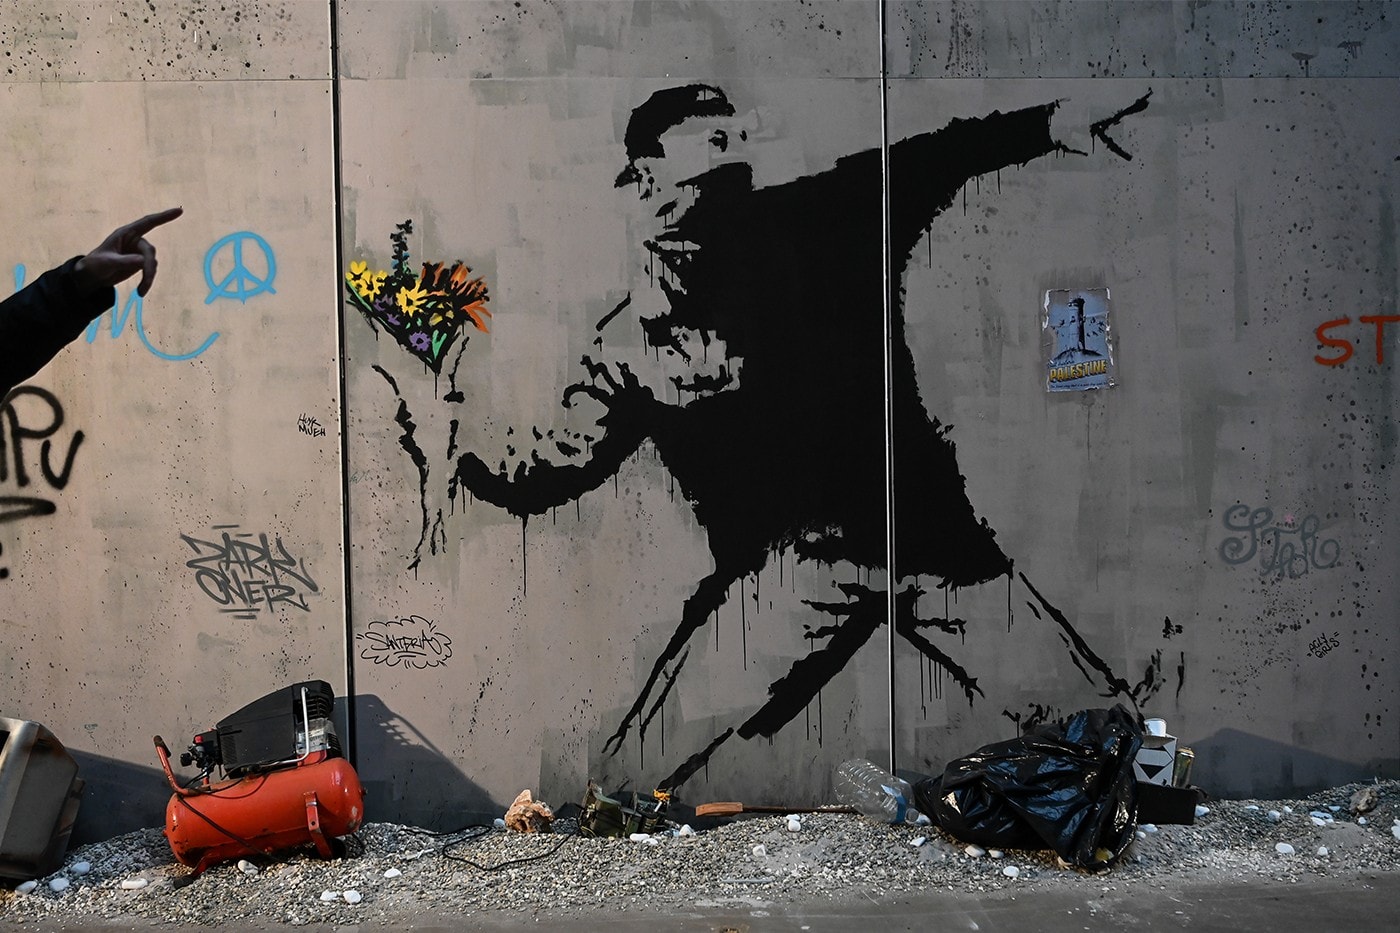 Banksy 指控 GUESS 未經同意盜竊其作品